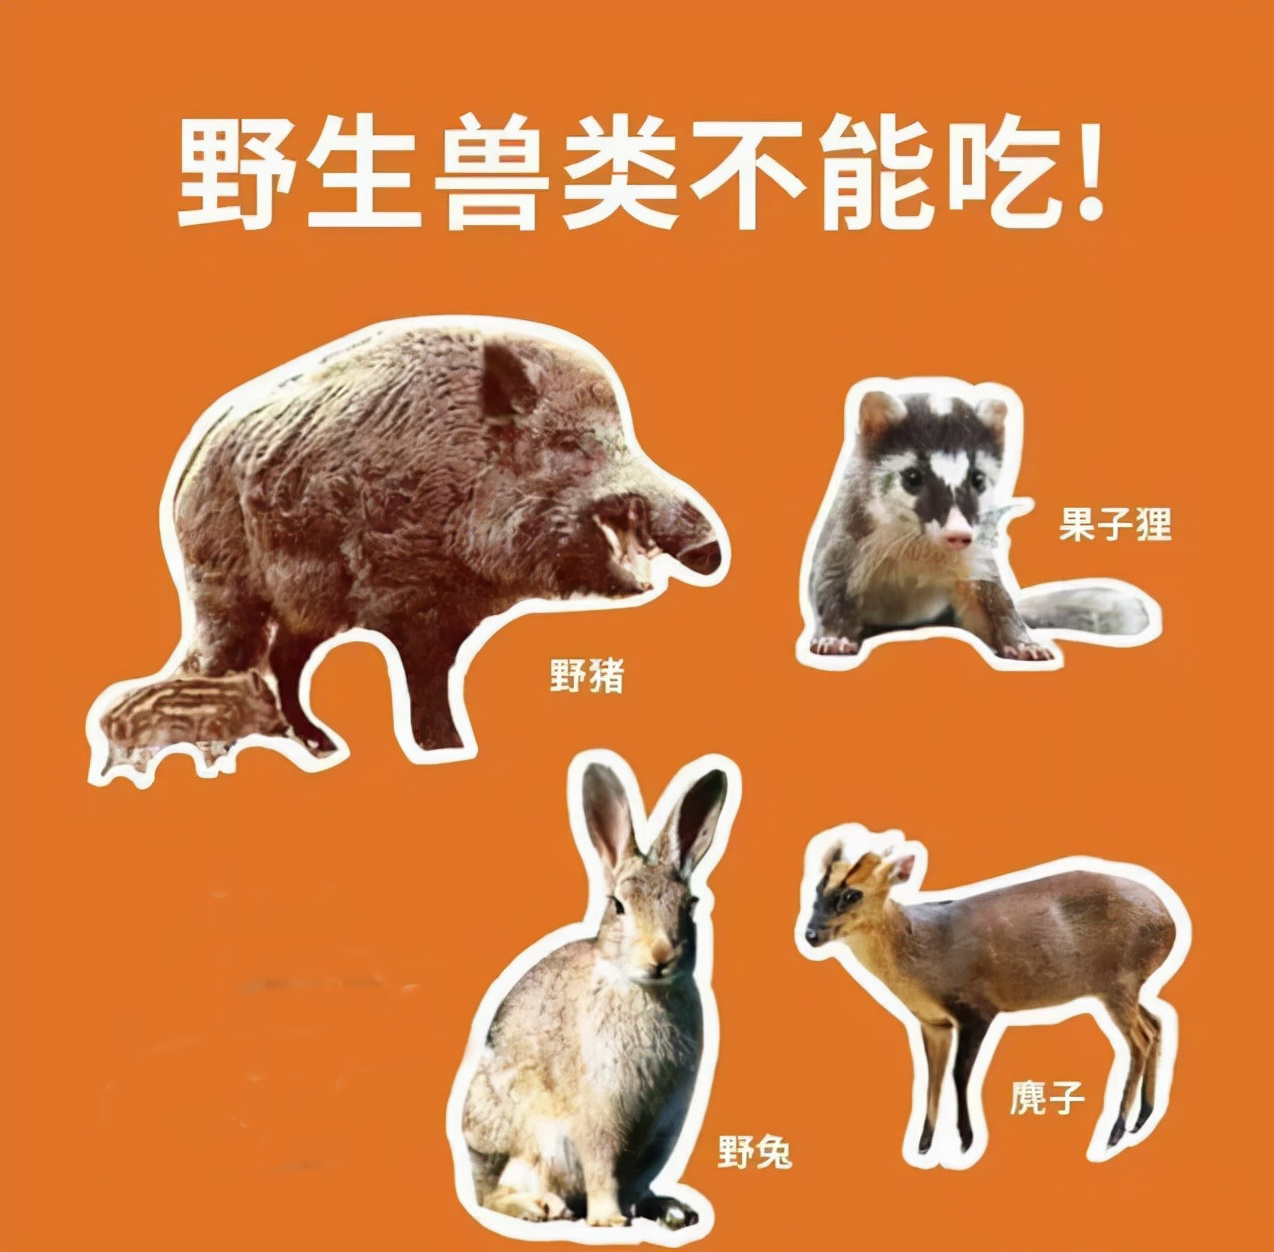 野兔是几级保护动物安徽三名男子捕捉一只野兔被罚专家保护动物每只